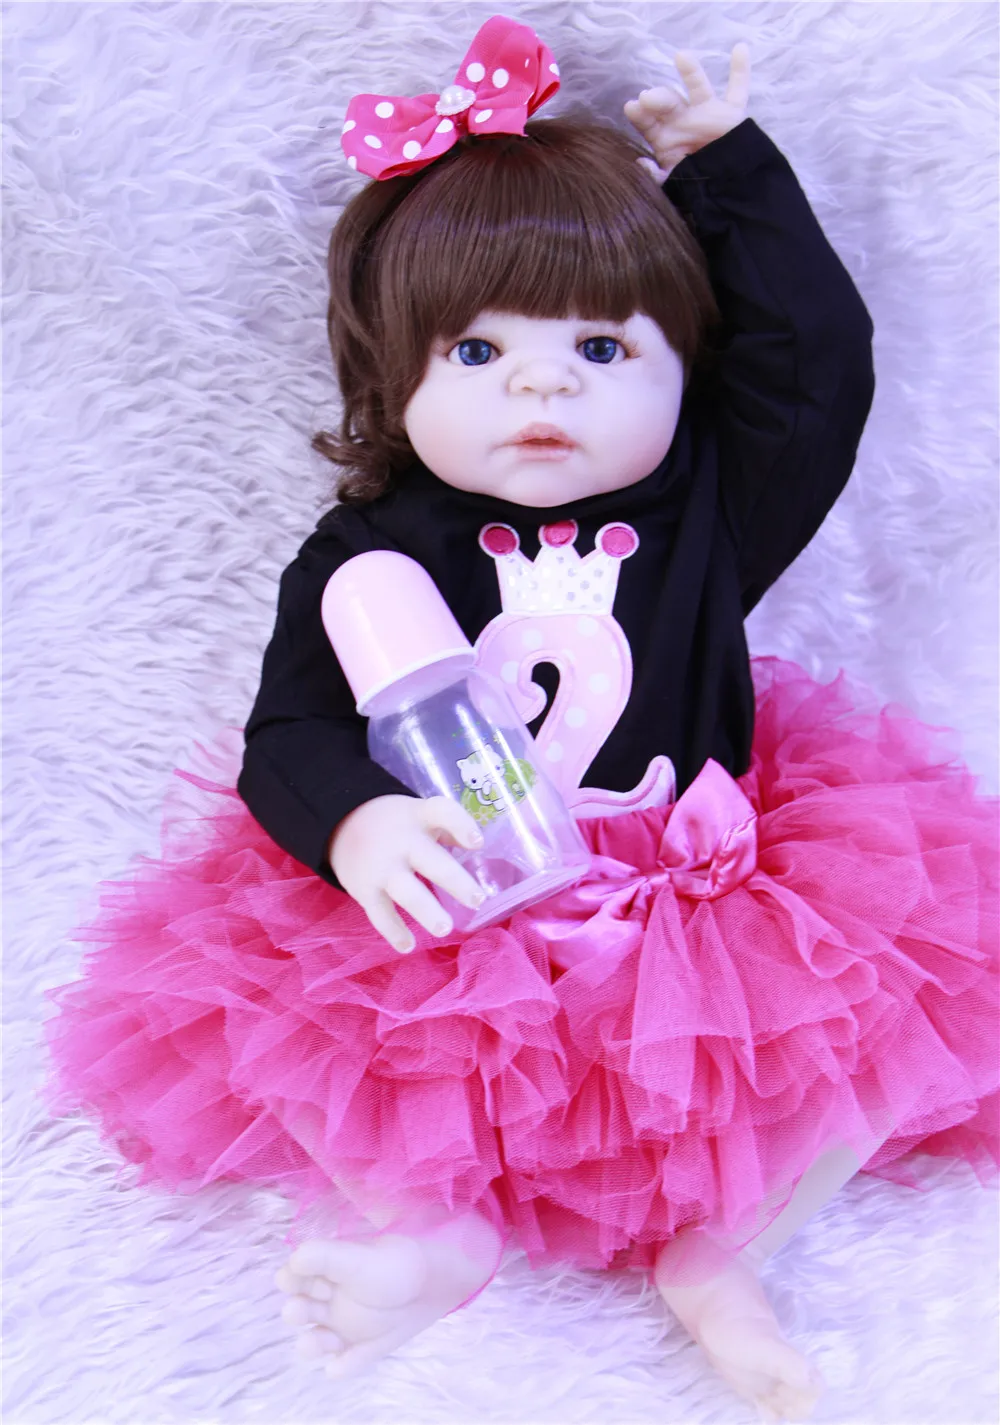 Bebes reborn menina, NPK, куклы для новорожденных, 57 см, полностью силиконовые, Виктория, кукла принцессы для новорожденных девочек, игрушка в подарок, bonecas